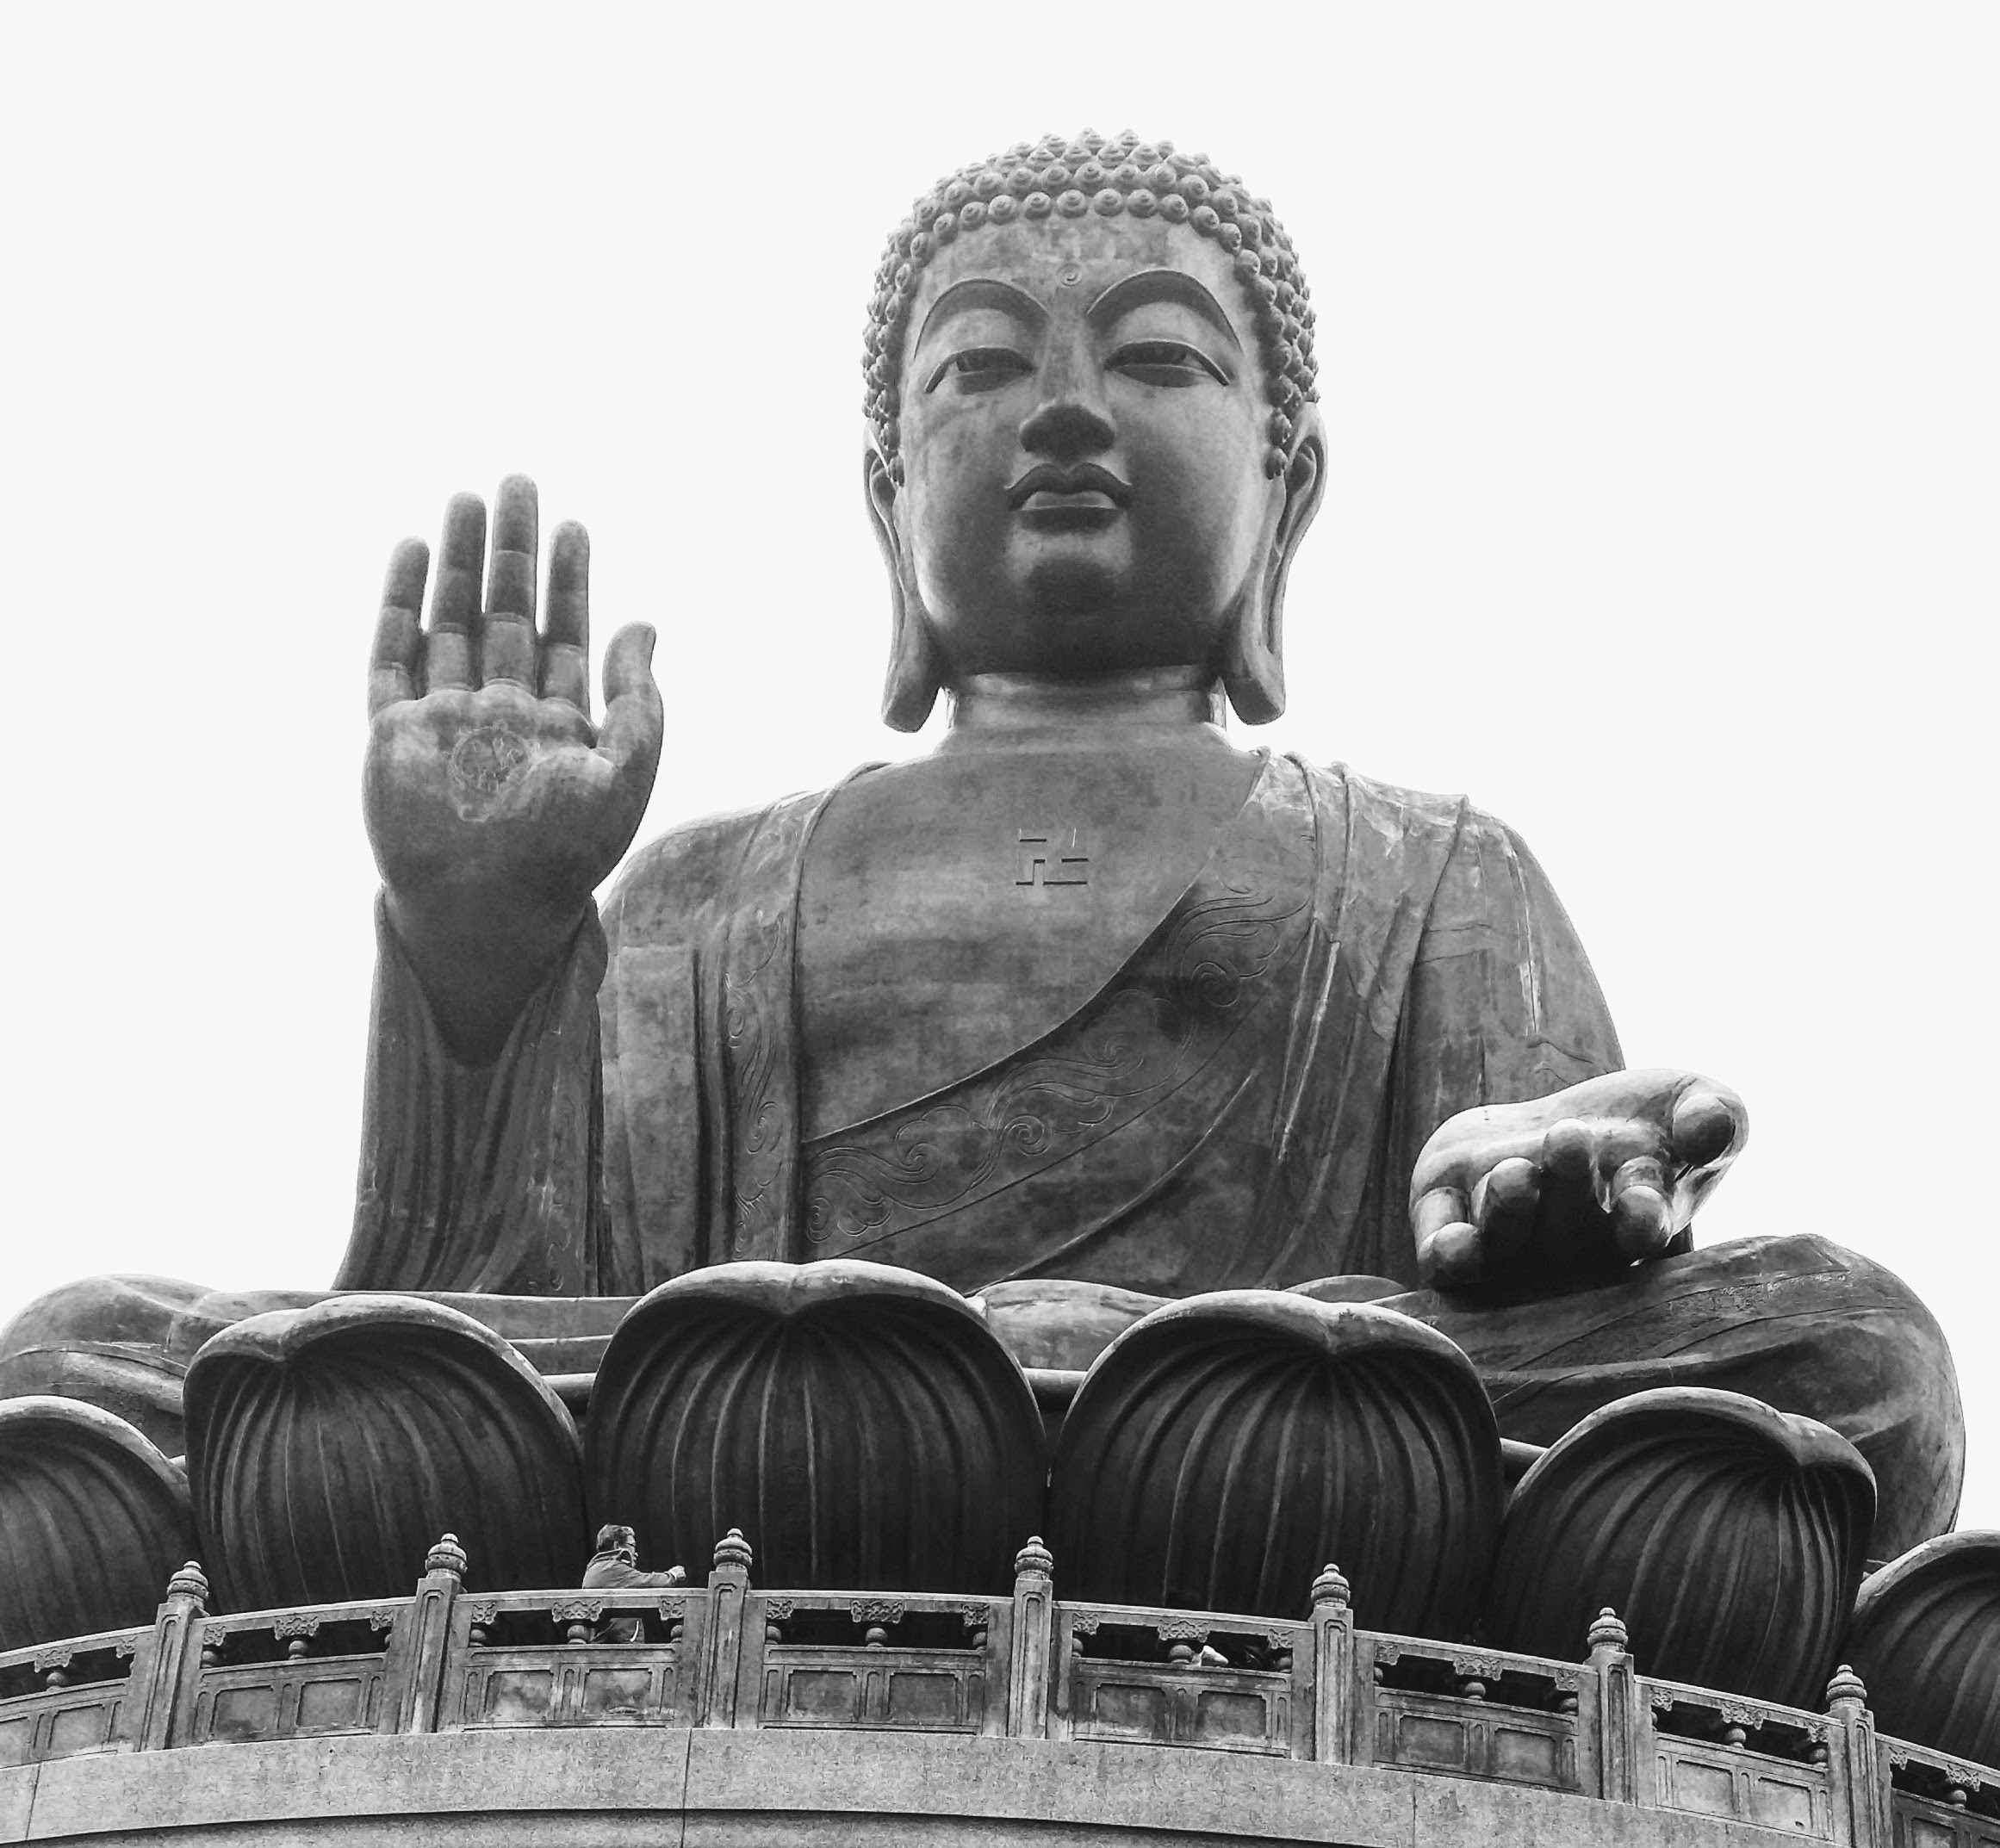 Visitando um vizinho ilustre, o  Big Buddha